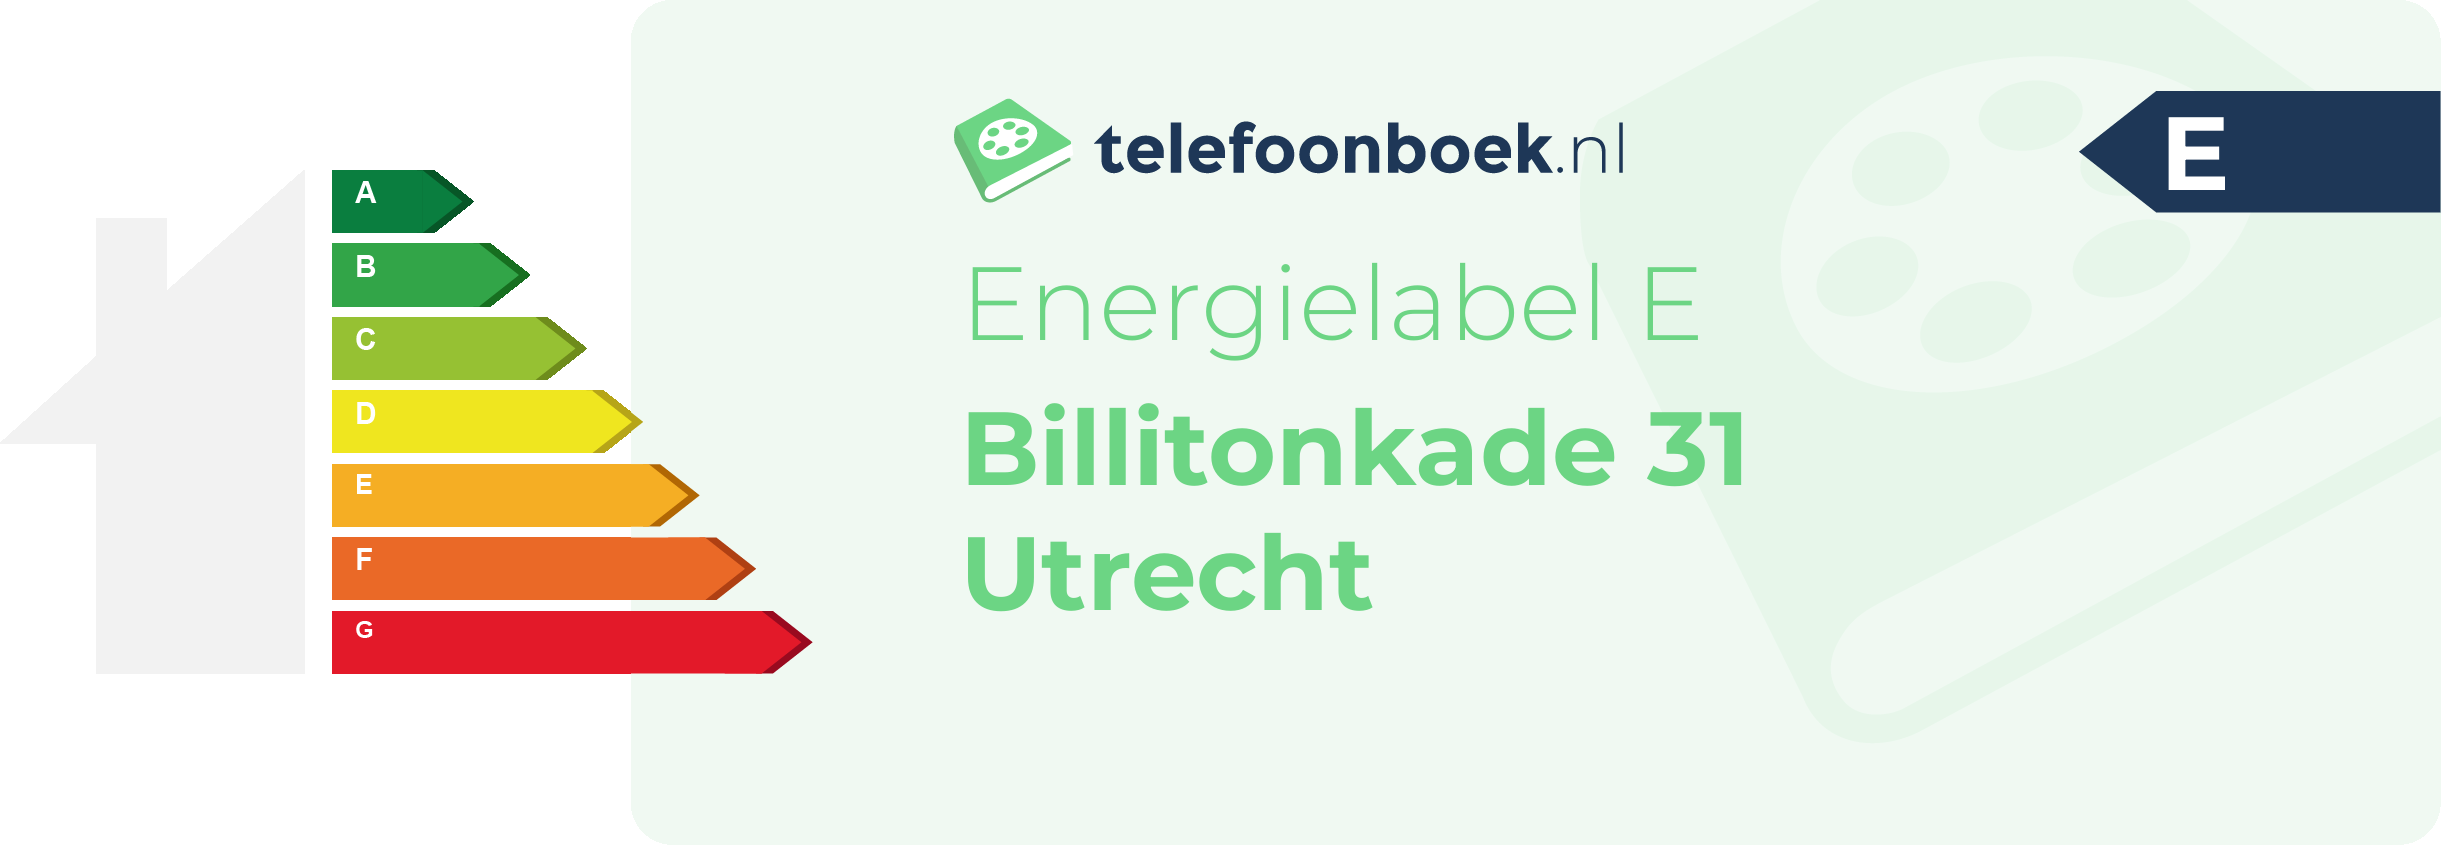 Energielabel Billitonkade 31 Utrecht